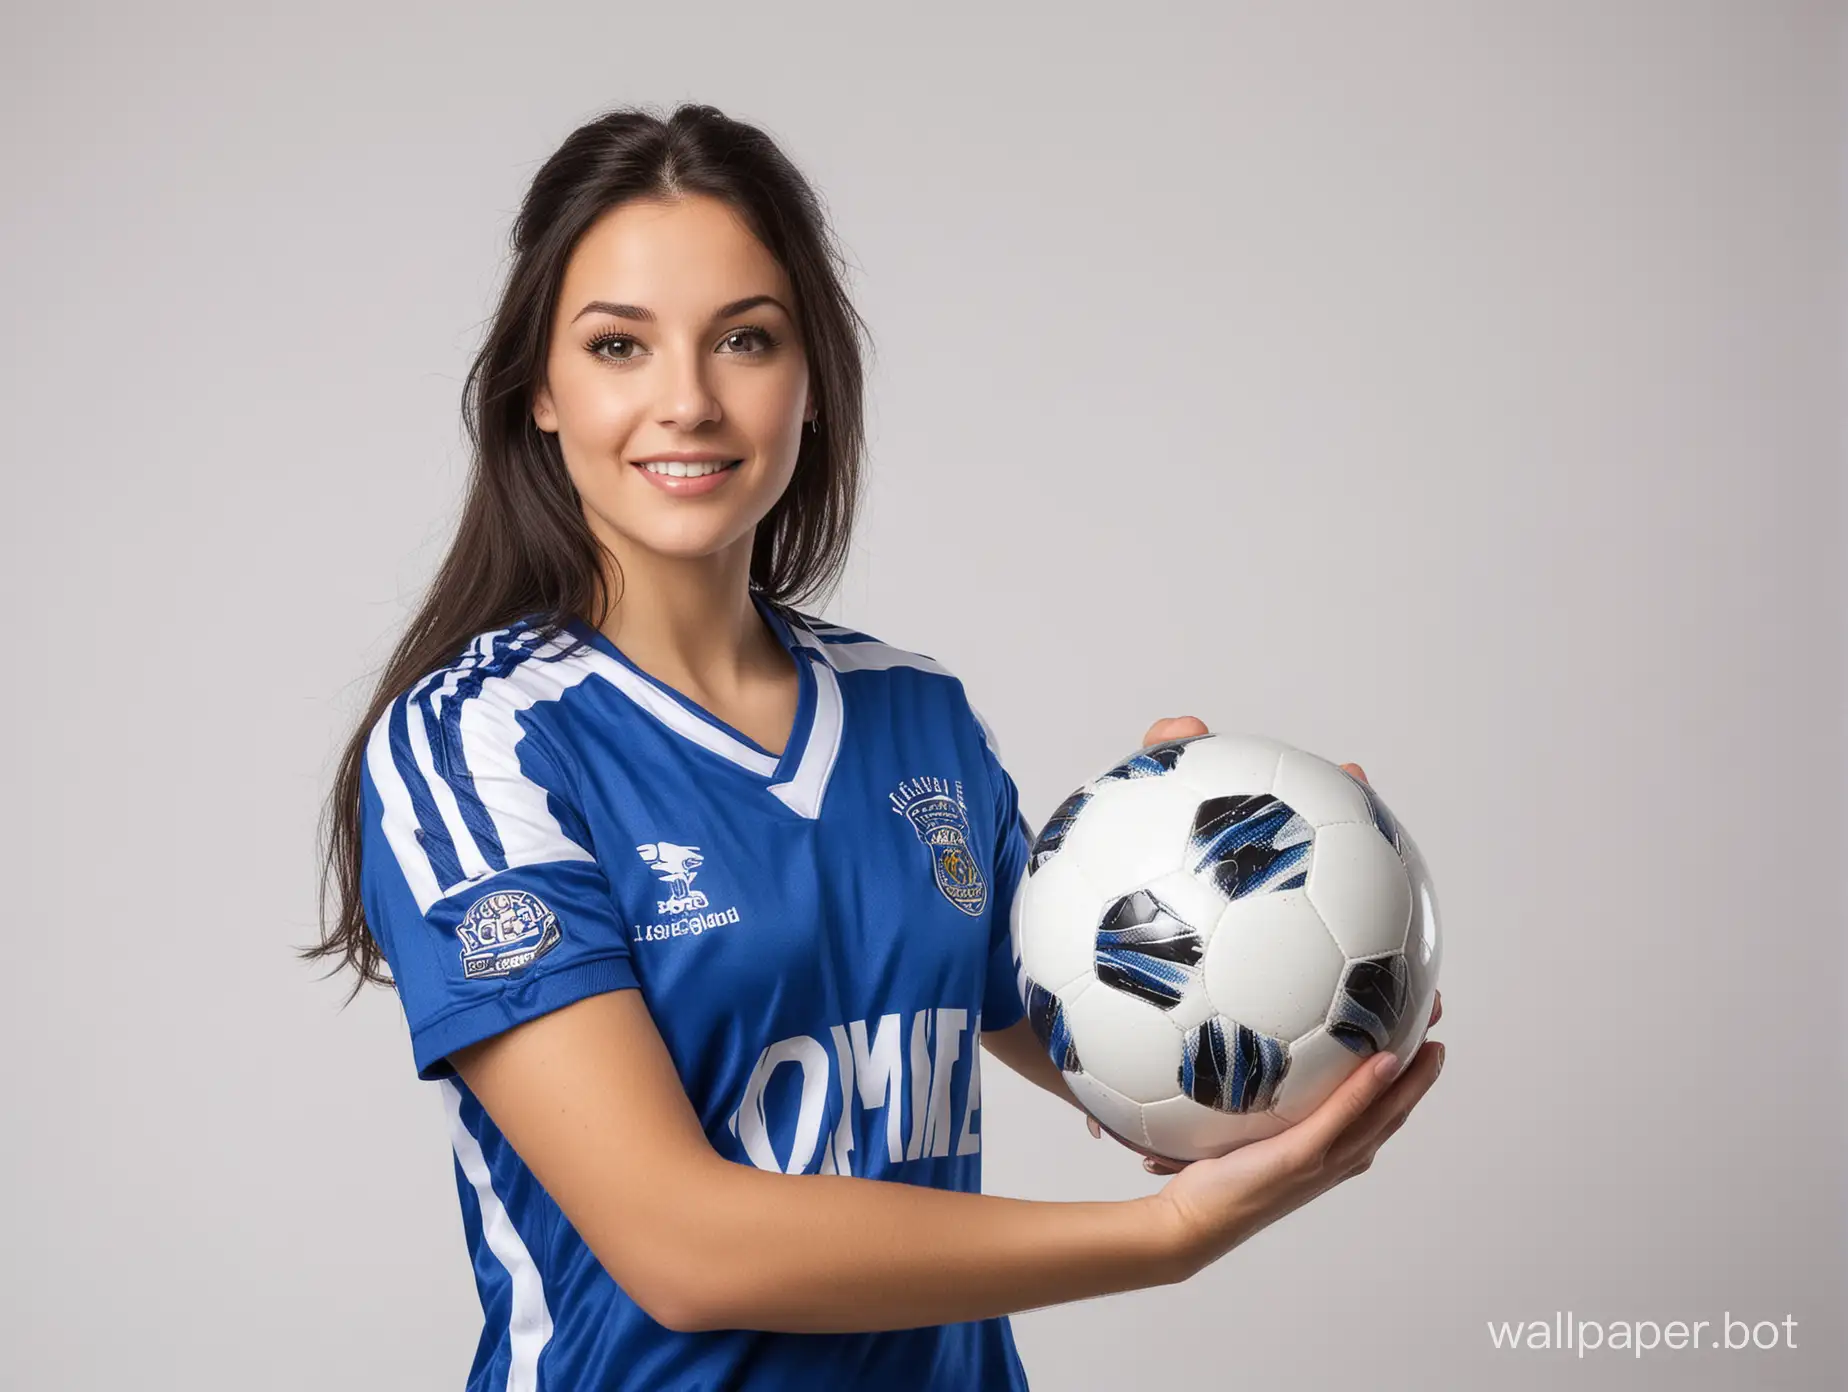 Bright-Blue-Soccer-Uniform-Portrait-of-Lisa-Duarte